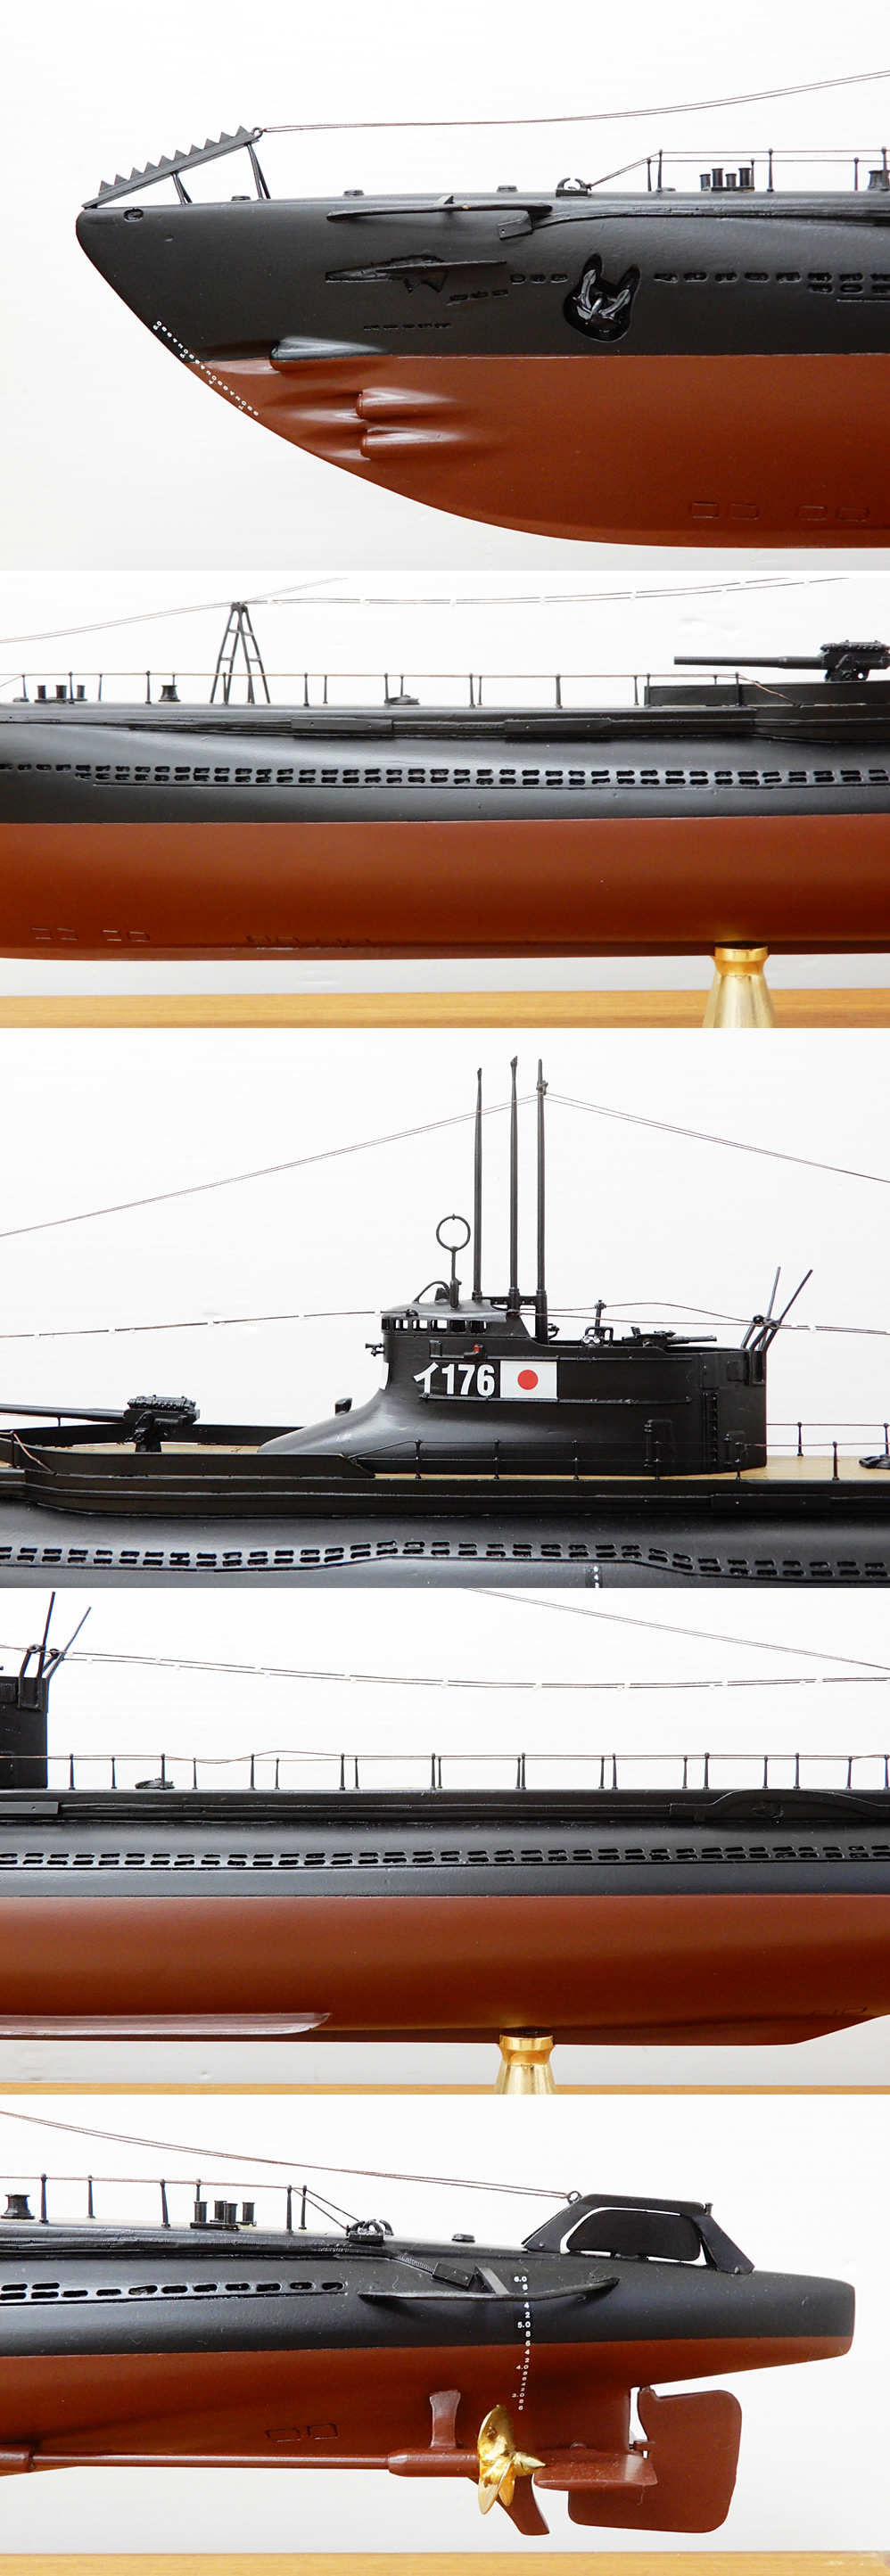 購入銀座◆◎小西製作所 日本海軍一等潜水艦海大？ 型 イ176 模型 1/100 全長107cm 大型模型 ケース付き 潜水艦模型 完成品